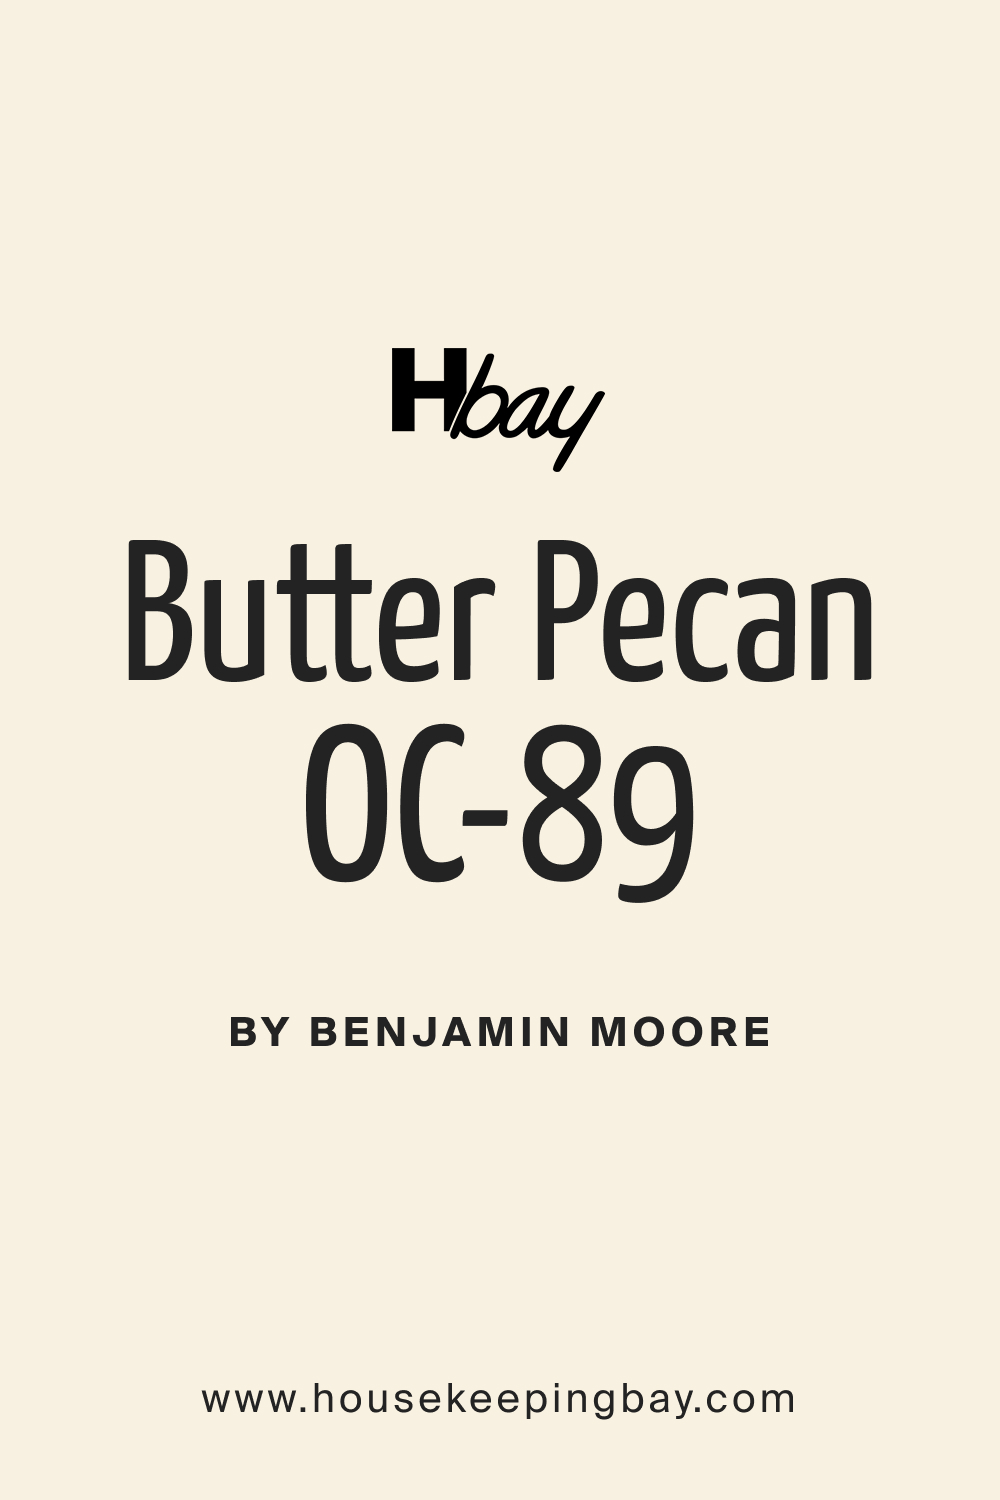 Butter Pecan OC 89 Paint Color by Benjamin Moore